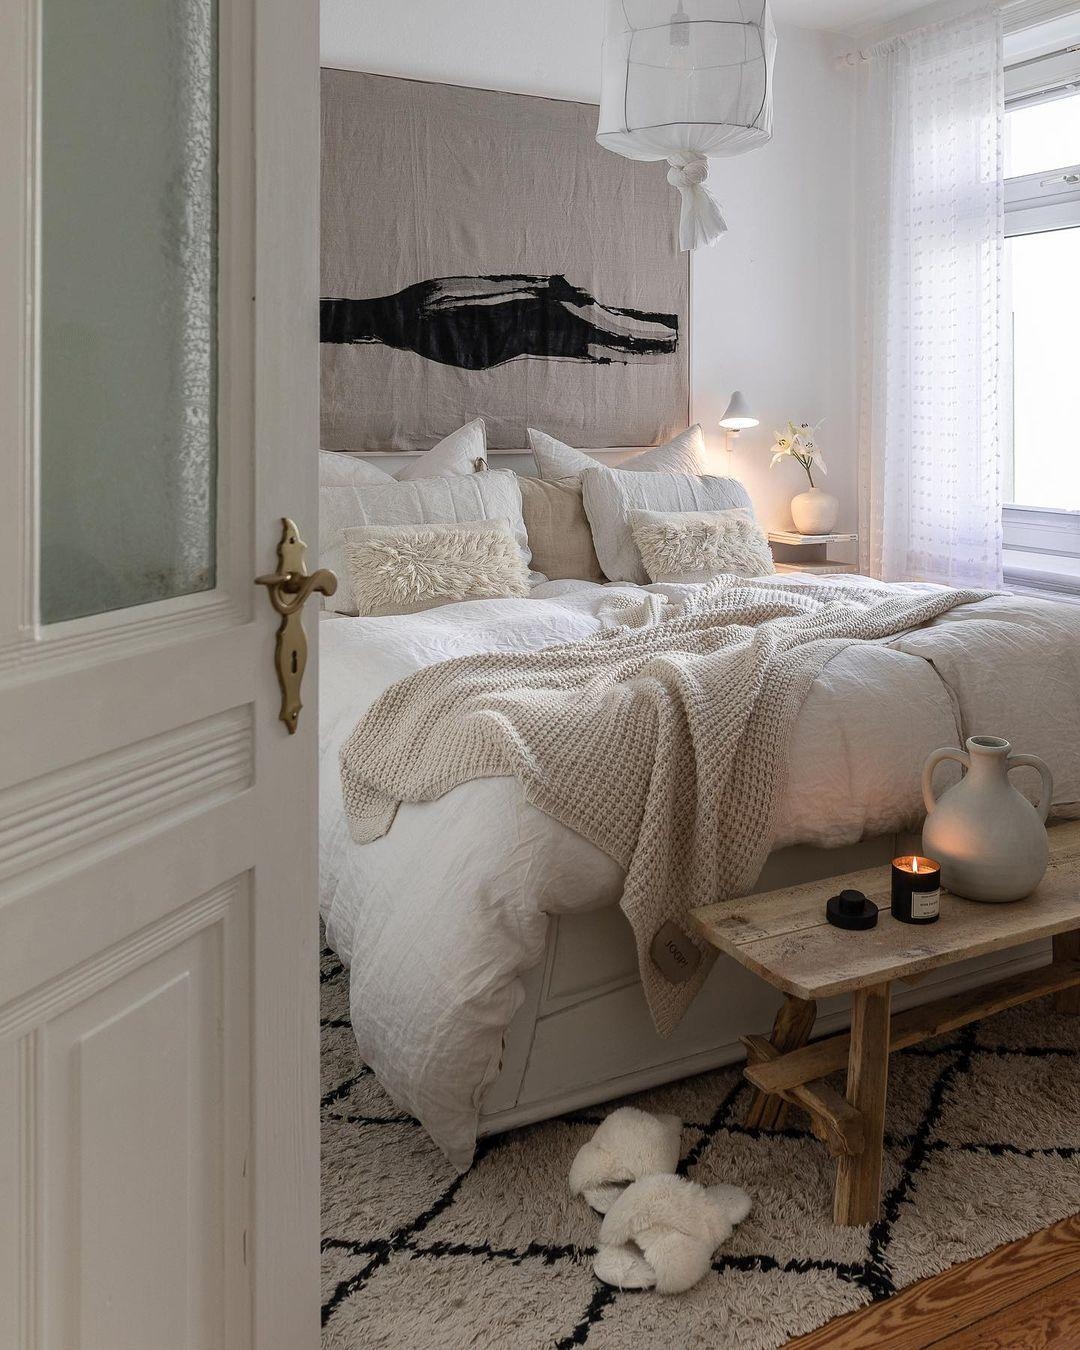 #cozy Sonntagsgrüße aus unserem #Schlafzimmer🤍✨

#wandbild #leuchte #lampe #couchstyle #bedroom #gemütlich #bett #hygge